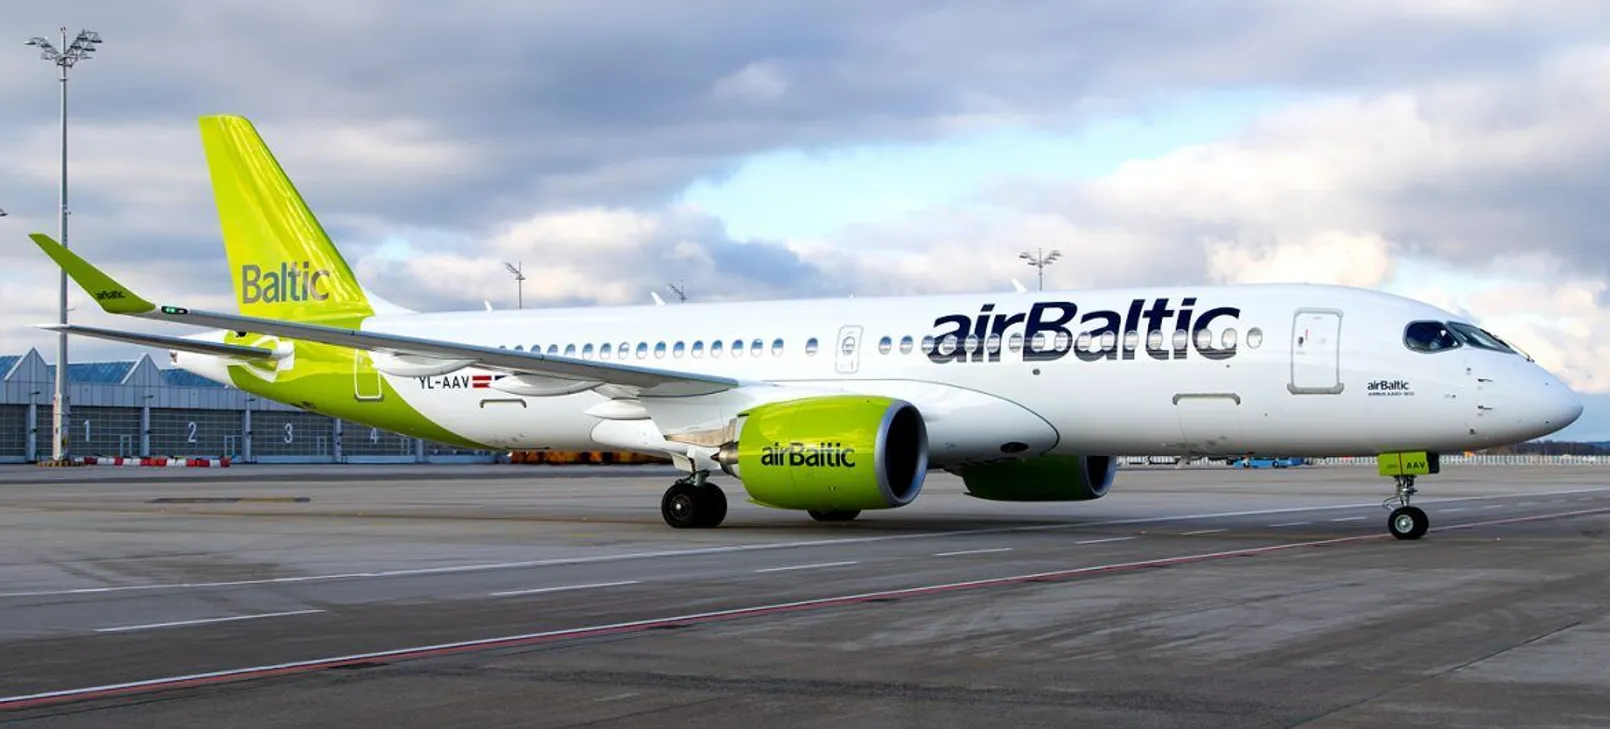 Air Baltic.jpg